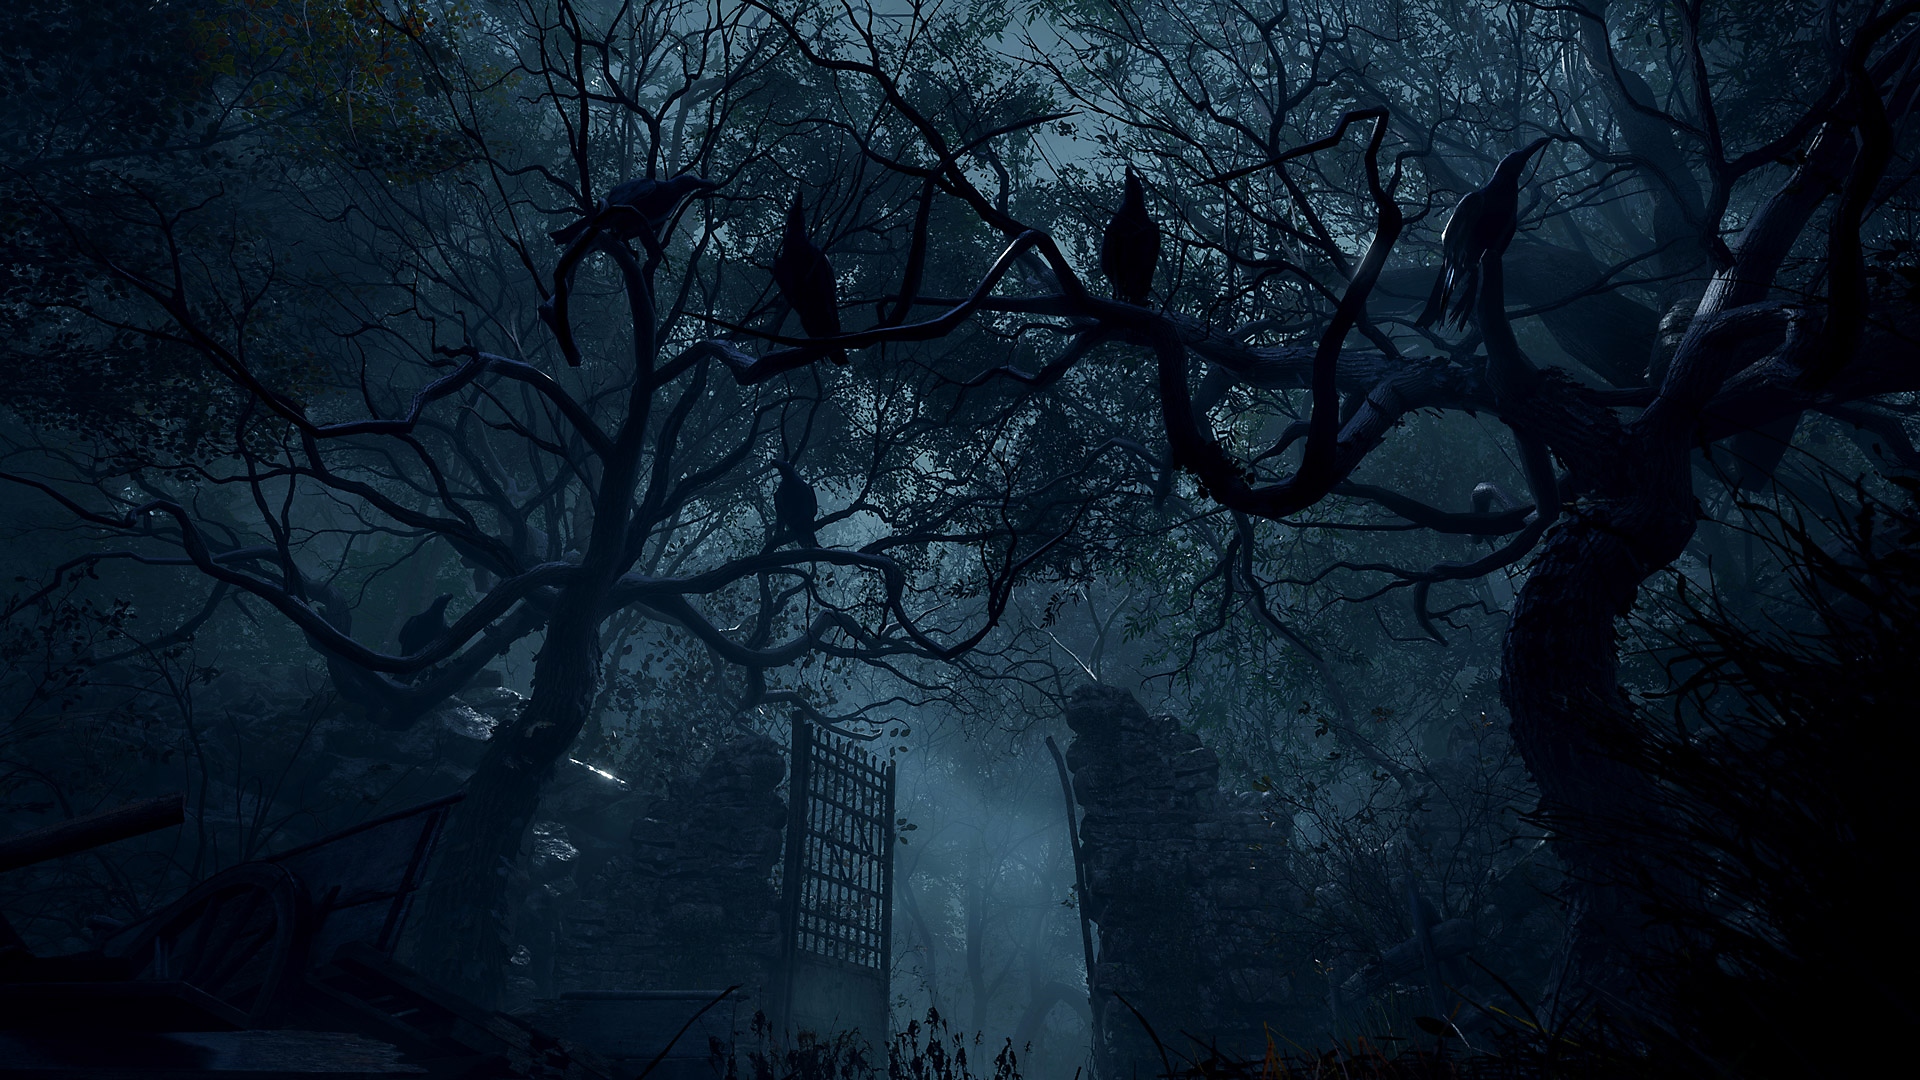 لقطة شاشة من Resident Evil 4 تعرض بوابات حجرية طويلة موجودة في منطقة غابات كثيفة.